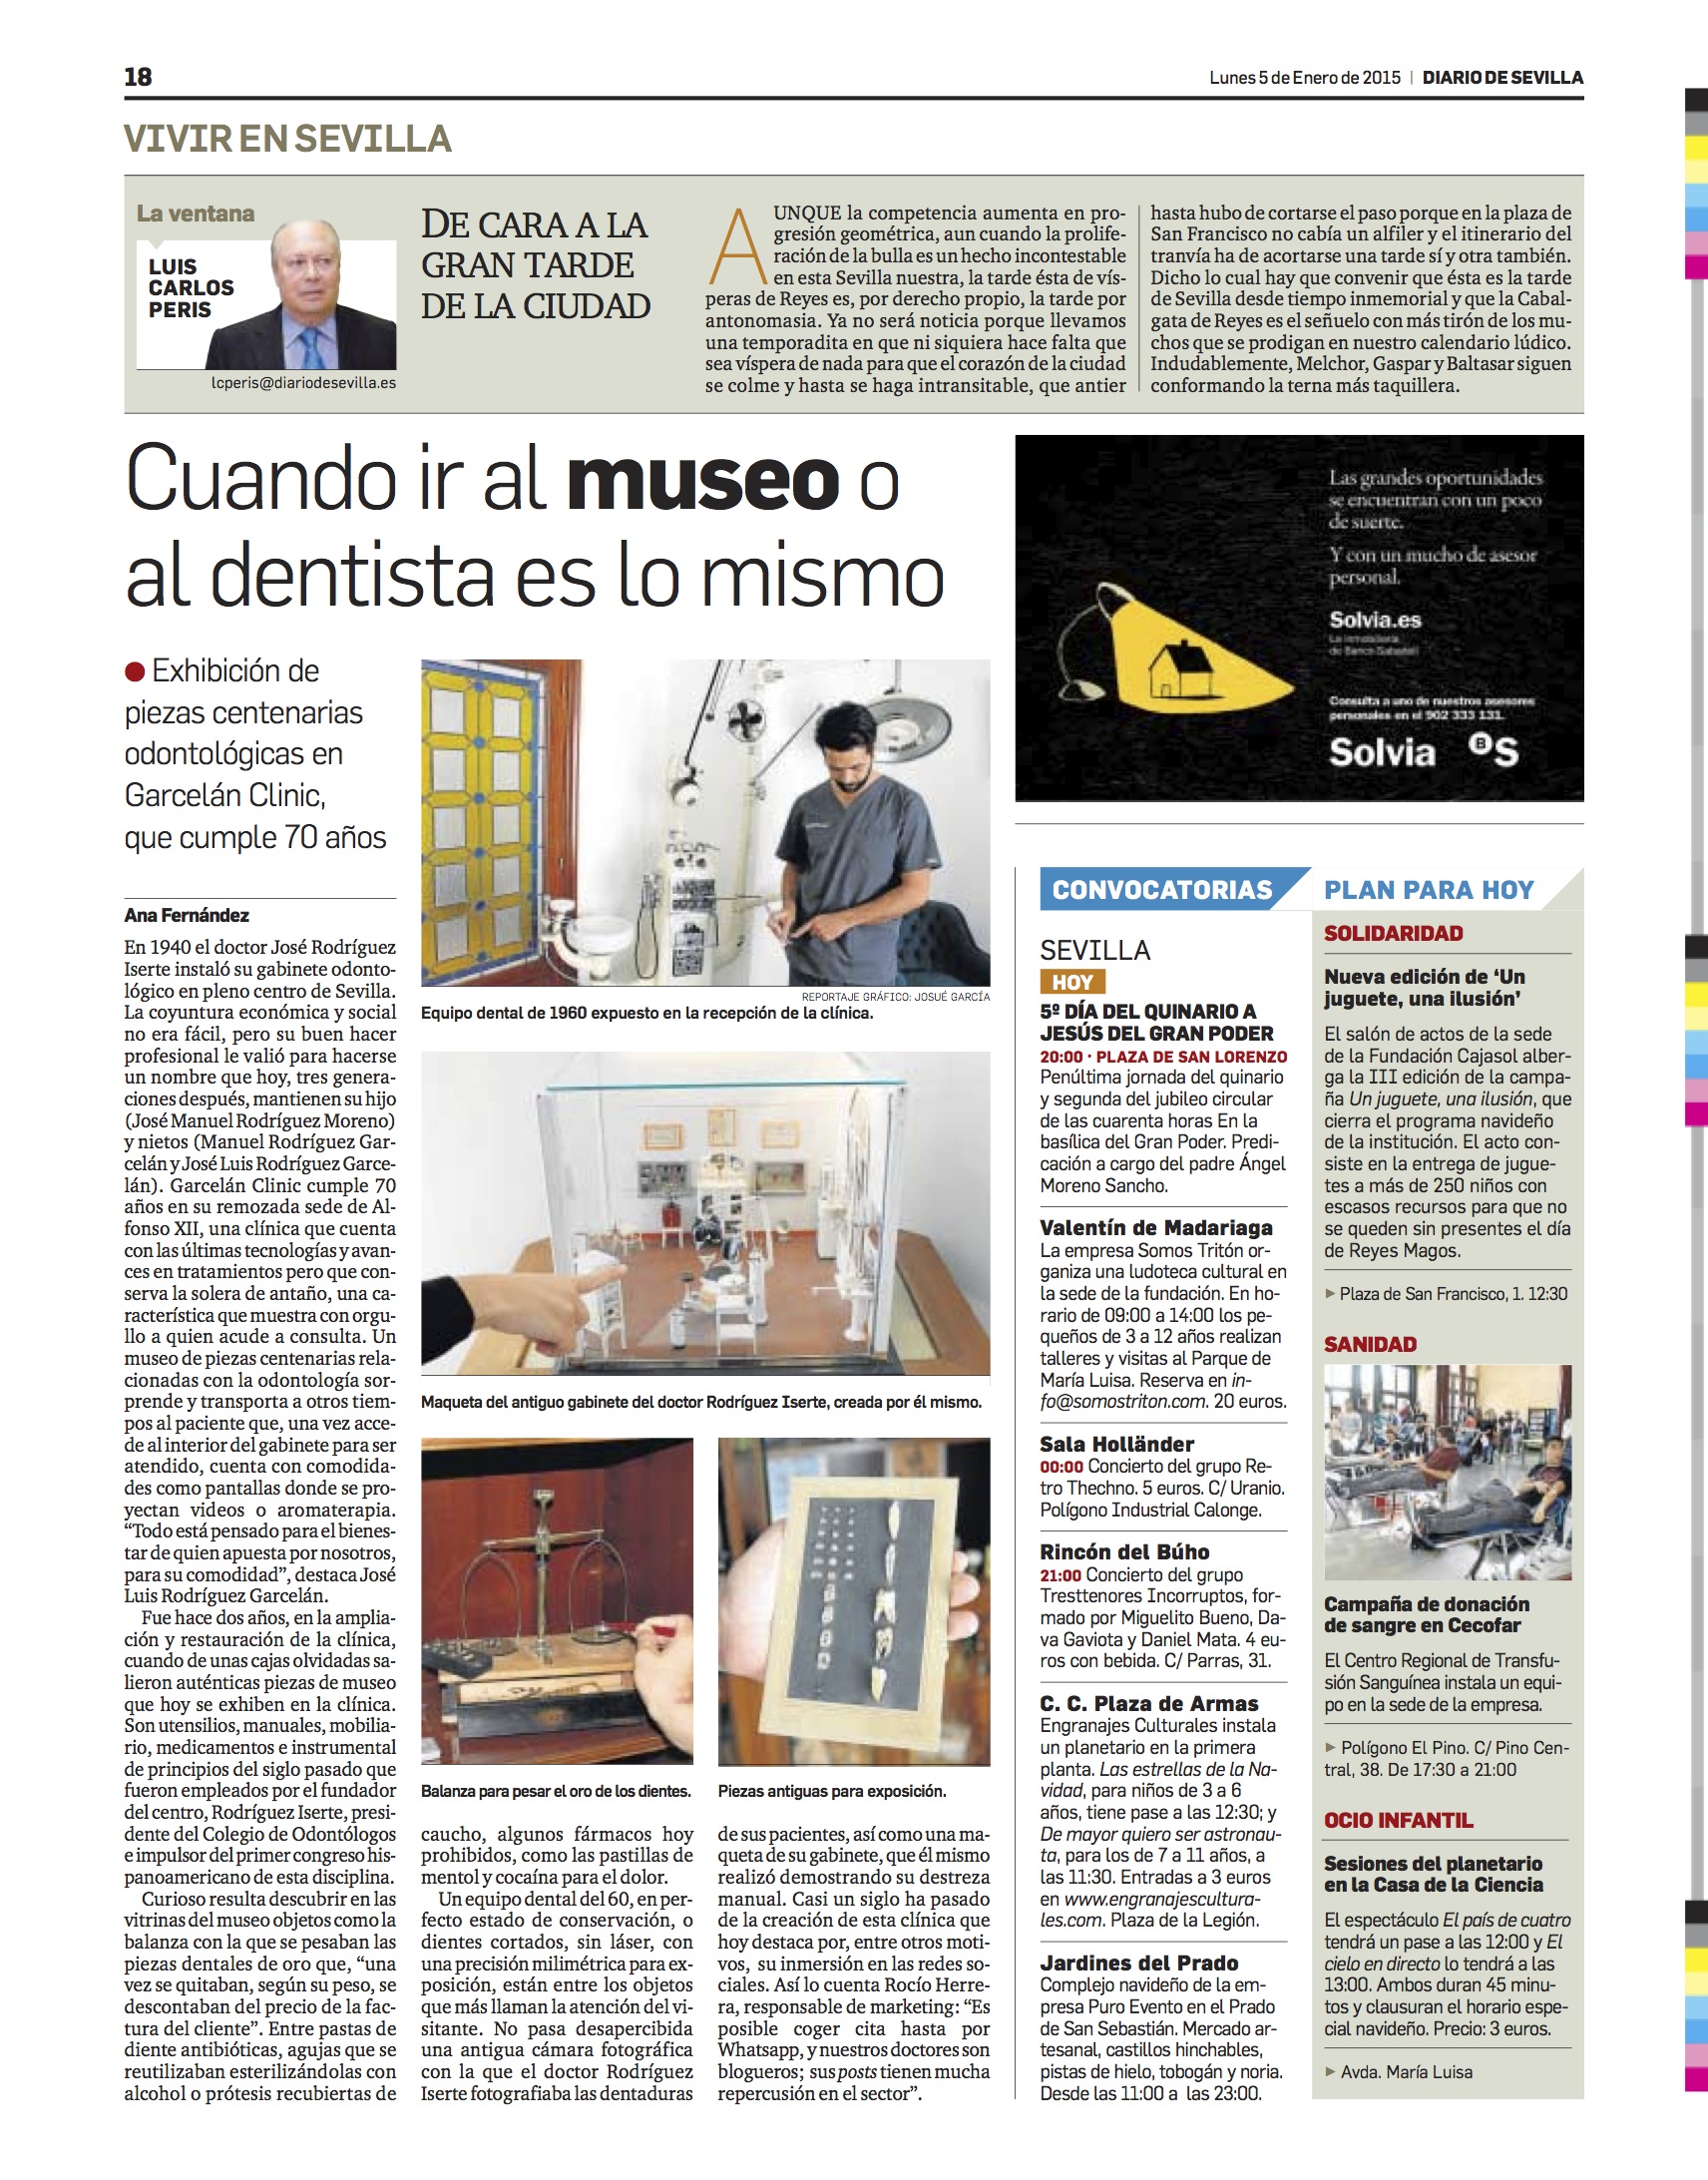 Museo dental noticia en Diario de Sevilla